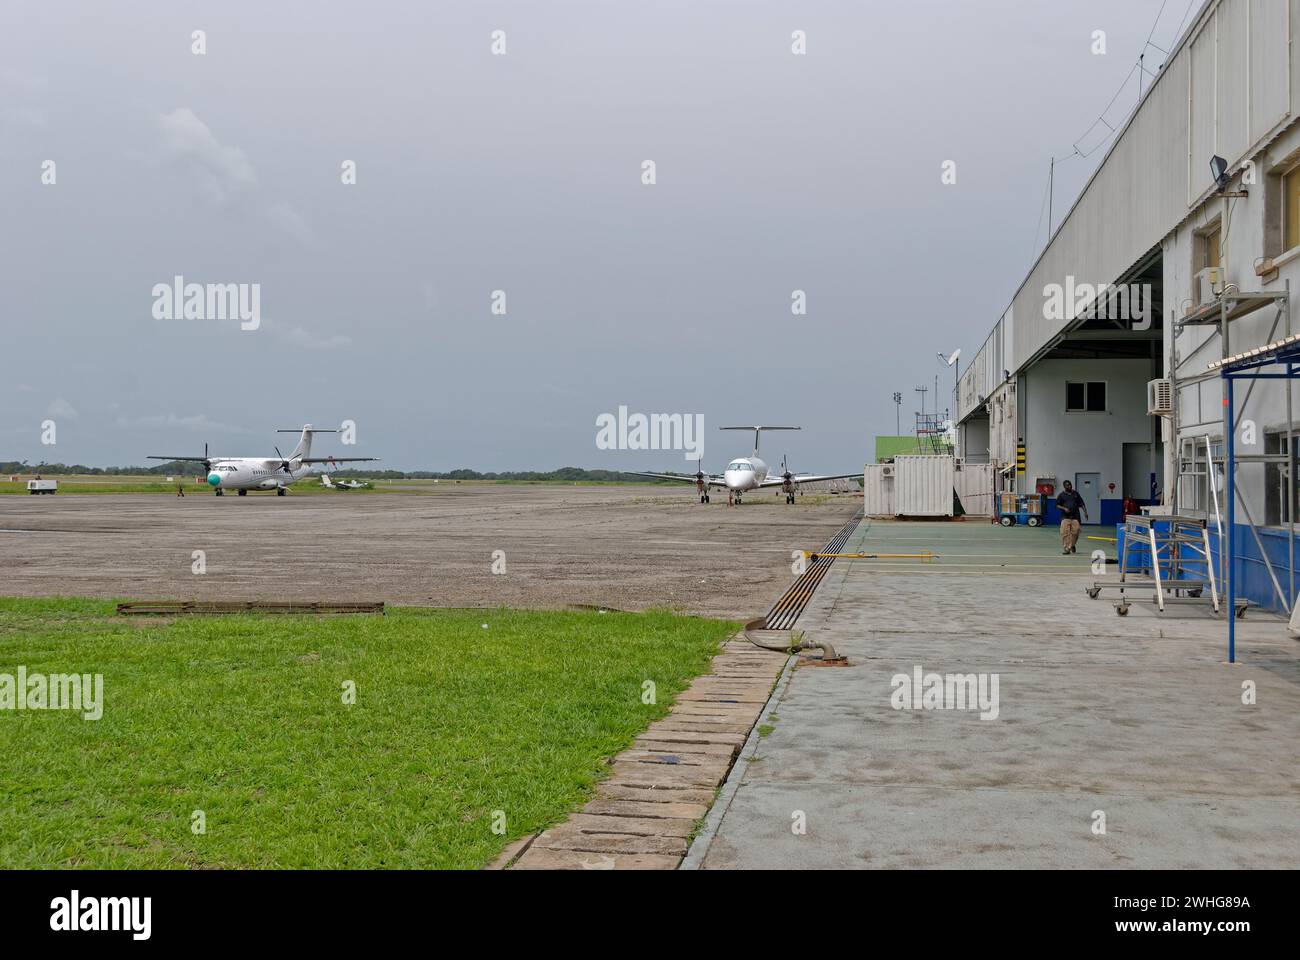 Des avions se sont garés sur l'aire de trafic de l'aéroport en béton de Port gentil un jour couvert de décembre, avec des employés de l'aéroport marchant près du terminal Bui Banque D'Images